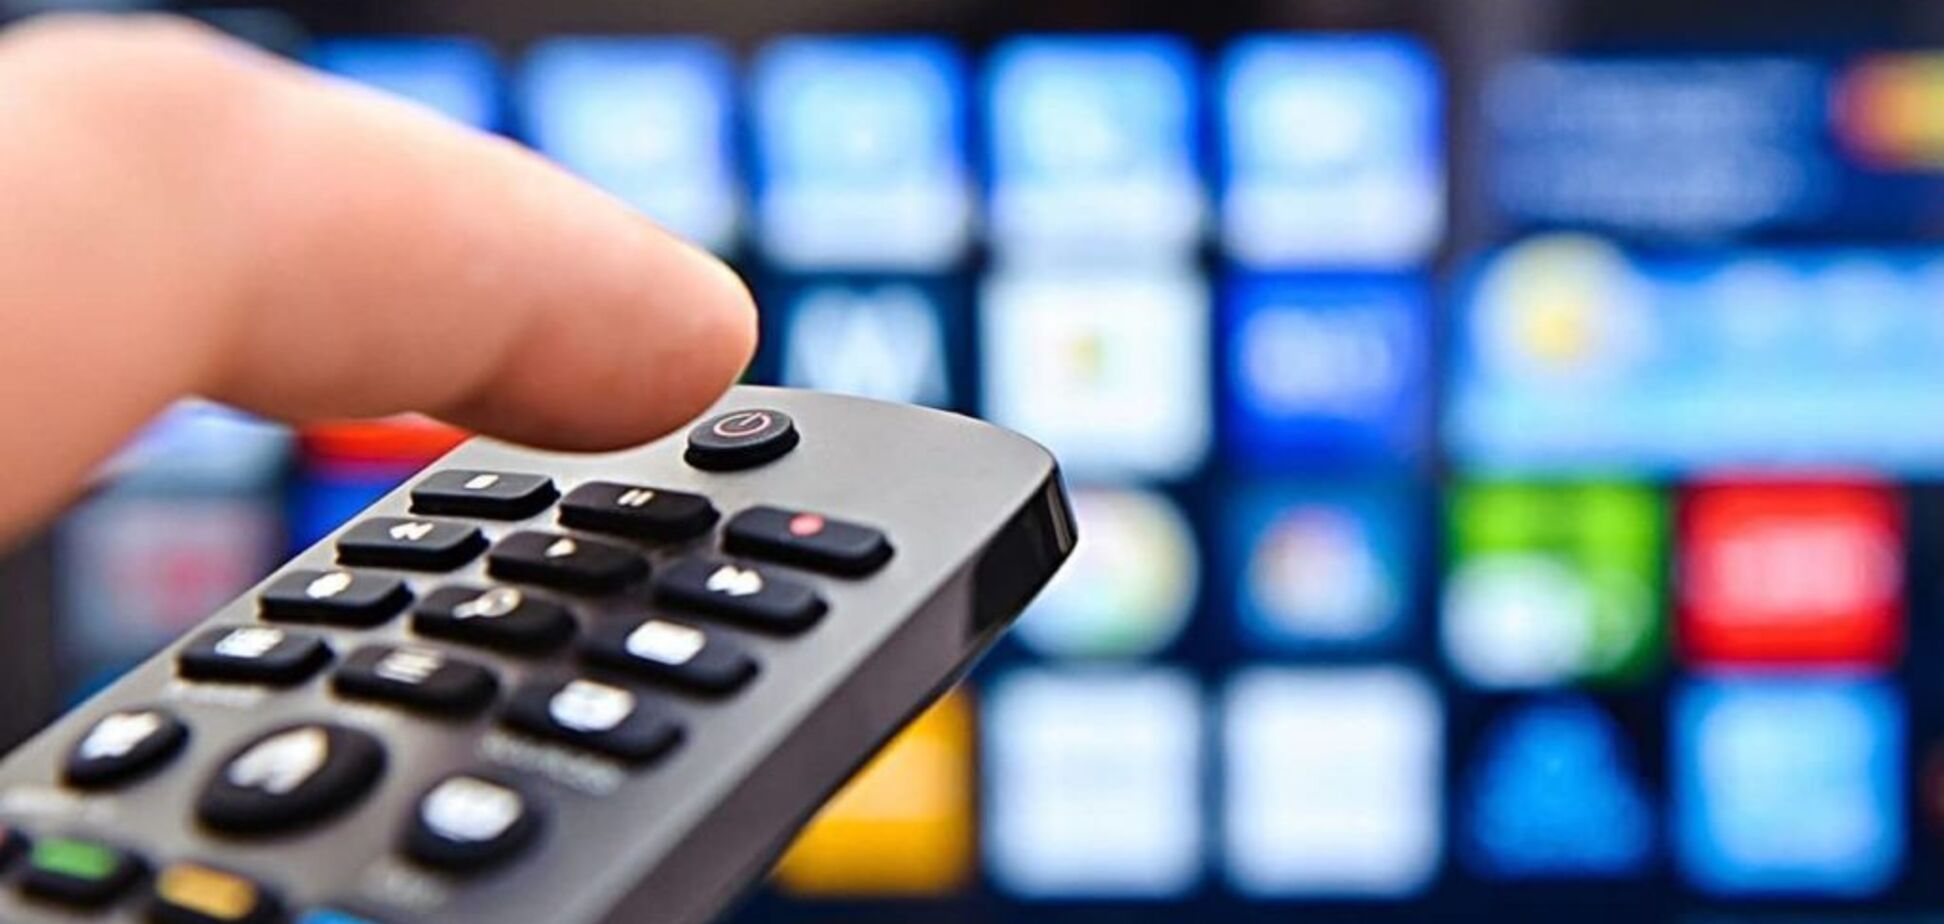 Украинских ТВ-провайдеров просят перенести канал Рада на 'элитную' кнопку – СМИ